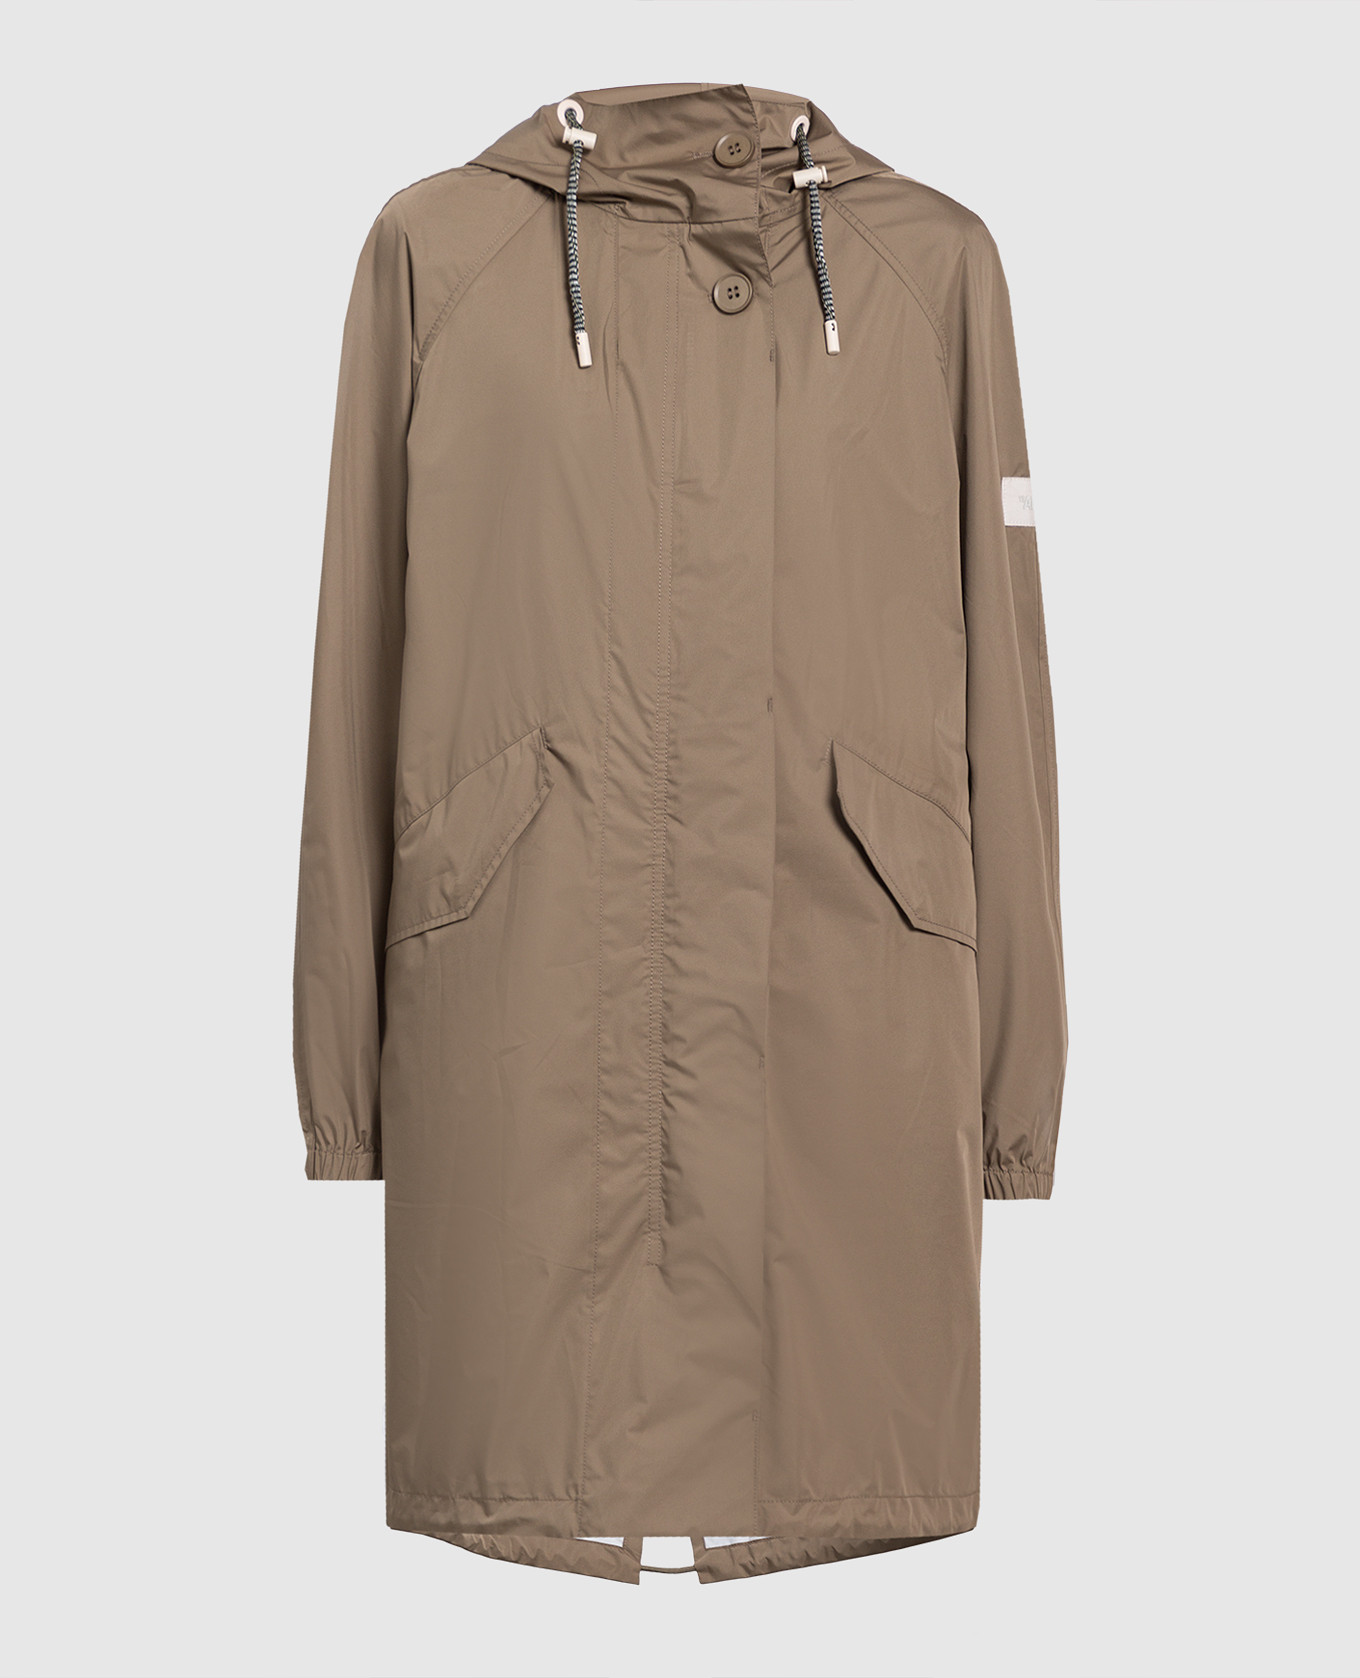 Dark beige raincoat with logo patch